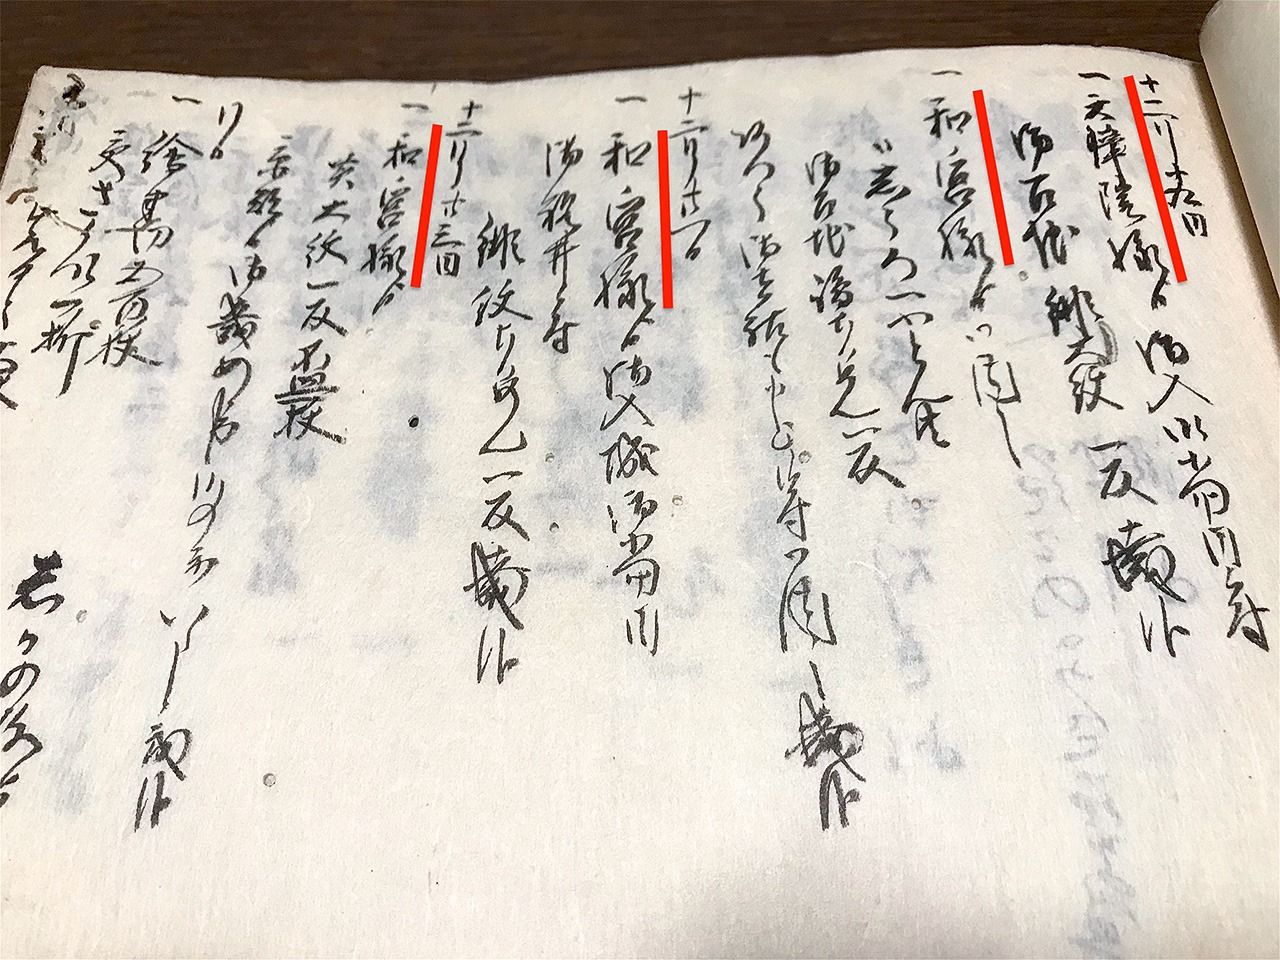 Имена Тэнсёин и Кадзуномия (выделено красным) в дневнике Такиямы. Там также указано, что она получала подарки от них, что даёт представление о близости их отношений (семейная коллекция Такияма)